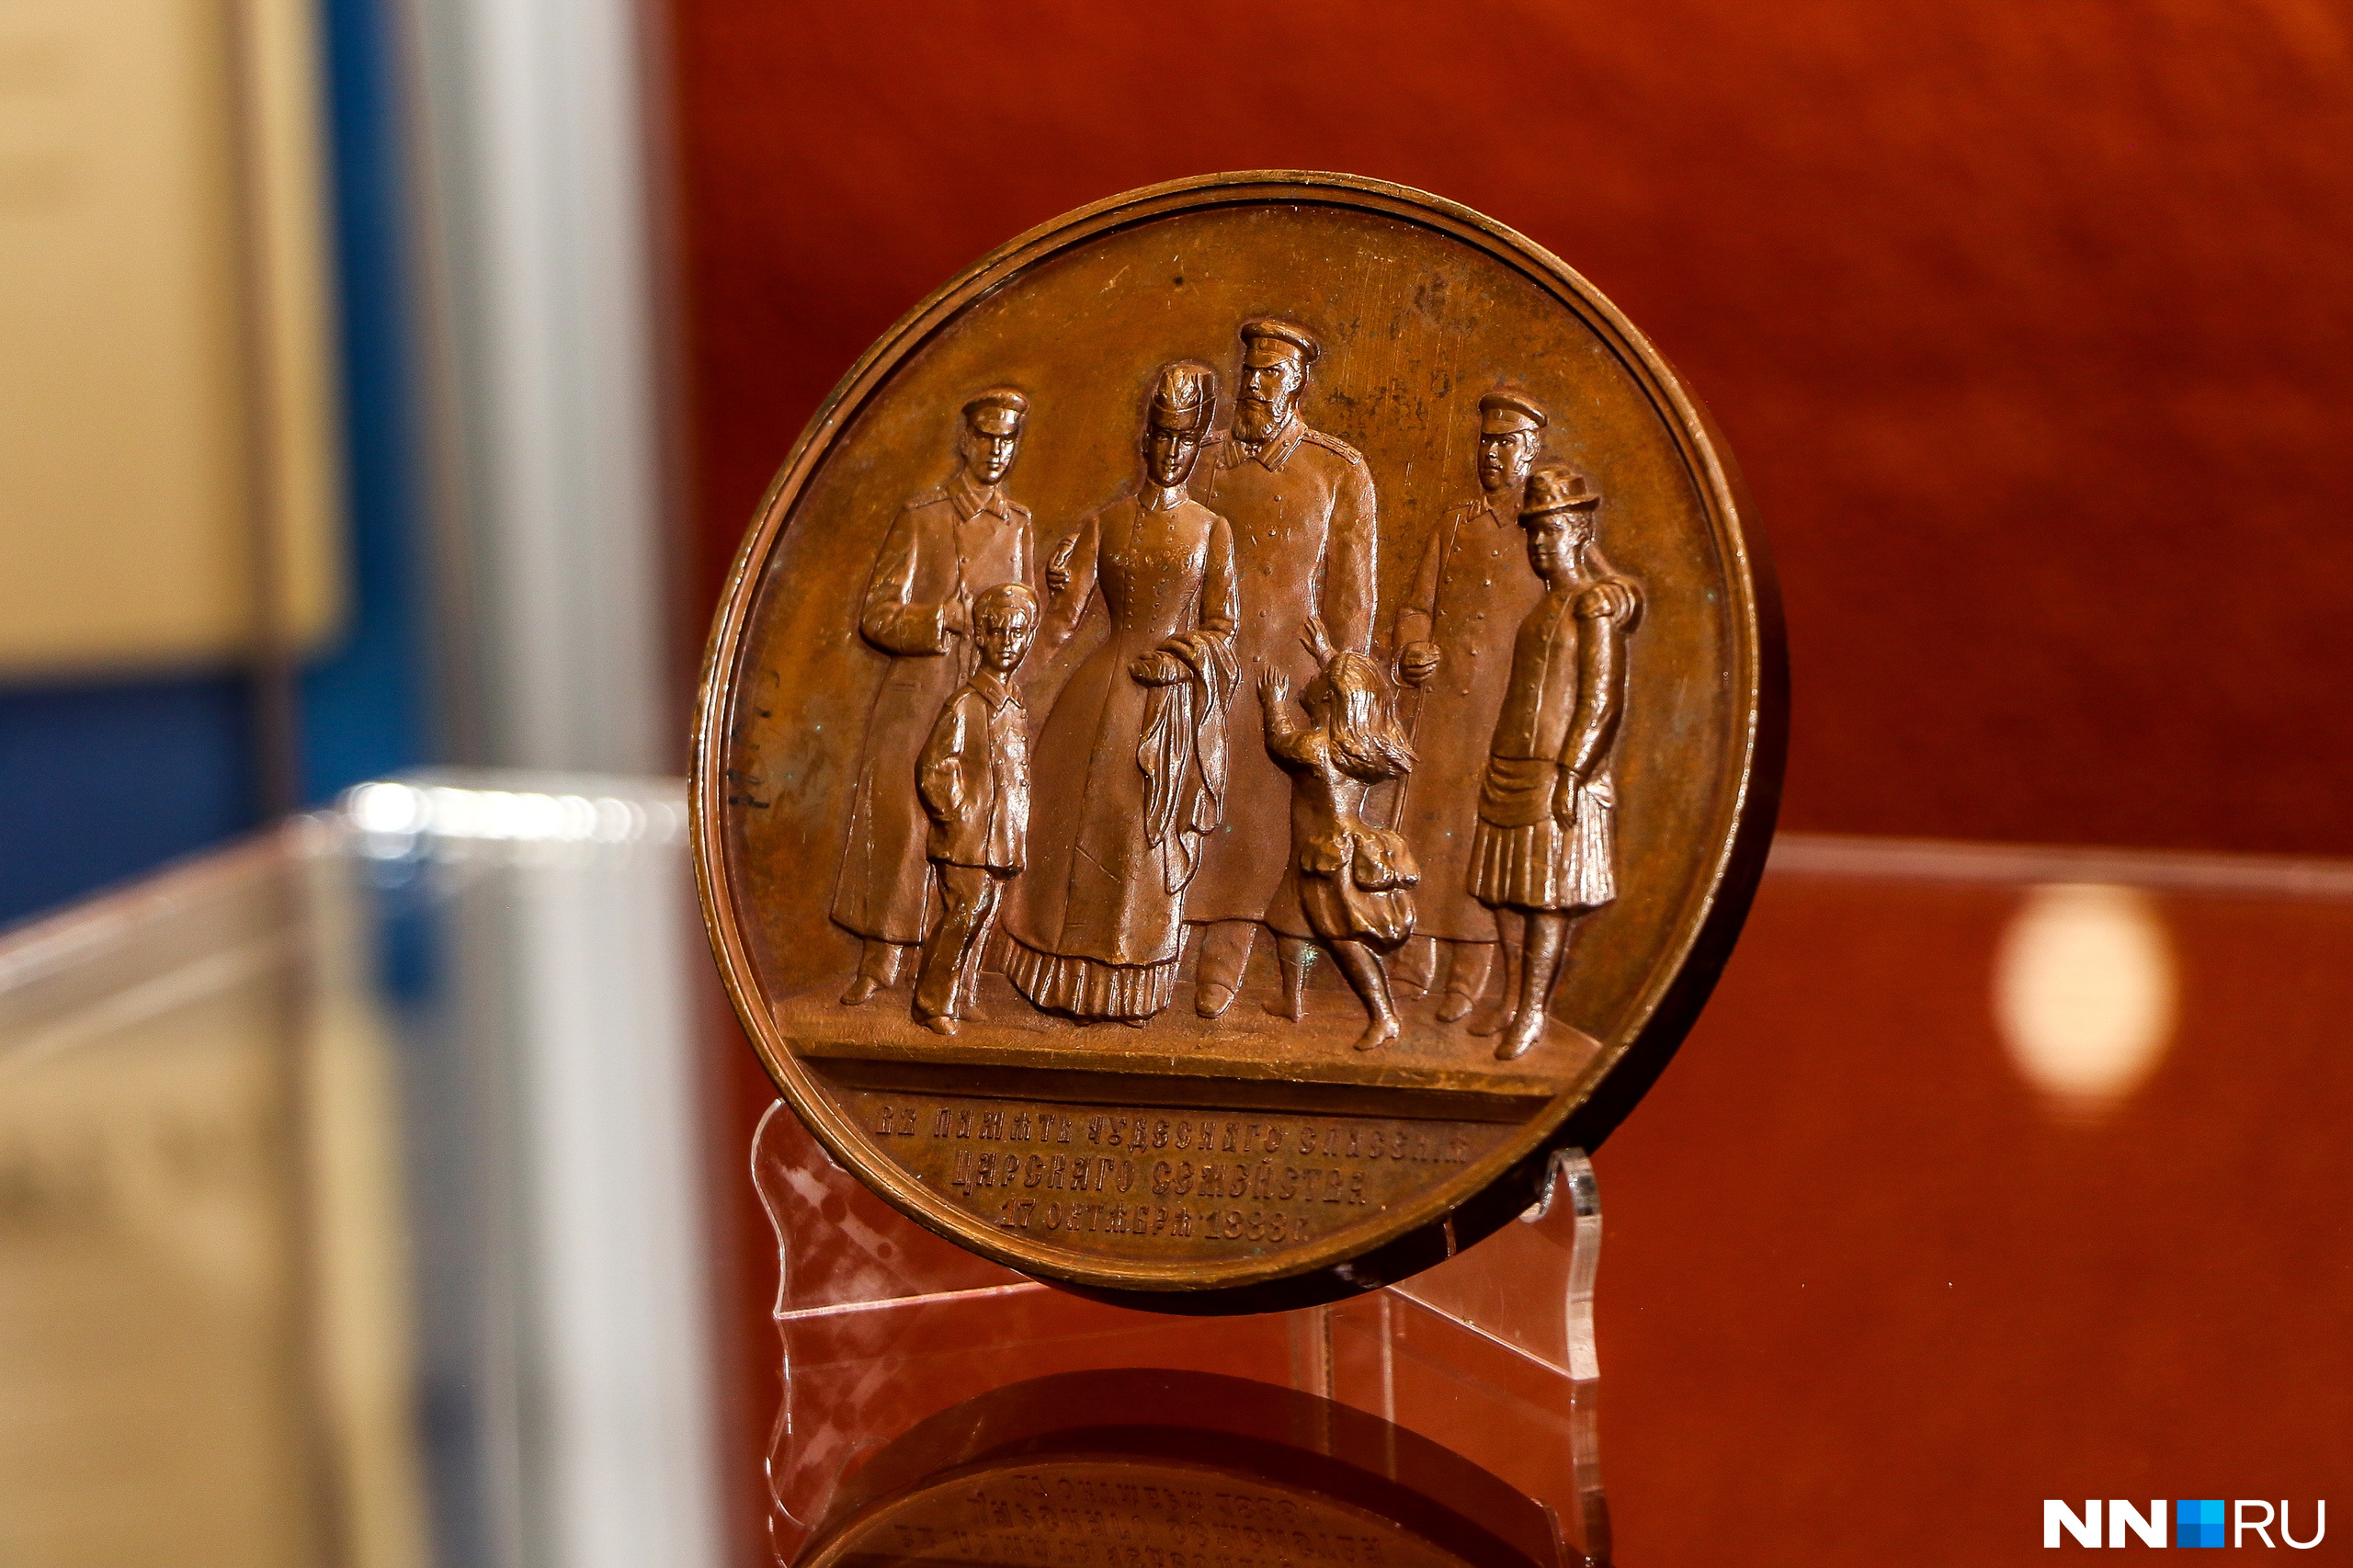 Очень редкая памятная медаль, посвящённая чудесному спасению царской семьи Николая II во время крушения поезда в 1888 году. Получена из музея нумизматики, но данные о том, когда медаль попала в Нижний Новгород, увы, неизвестна<br>